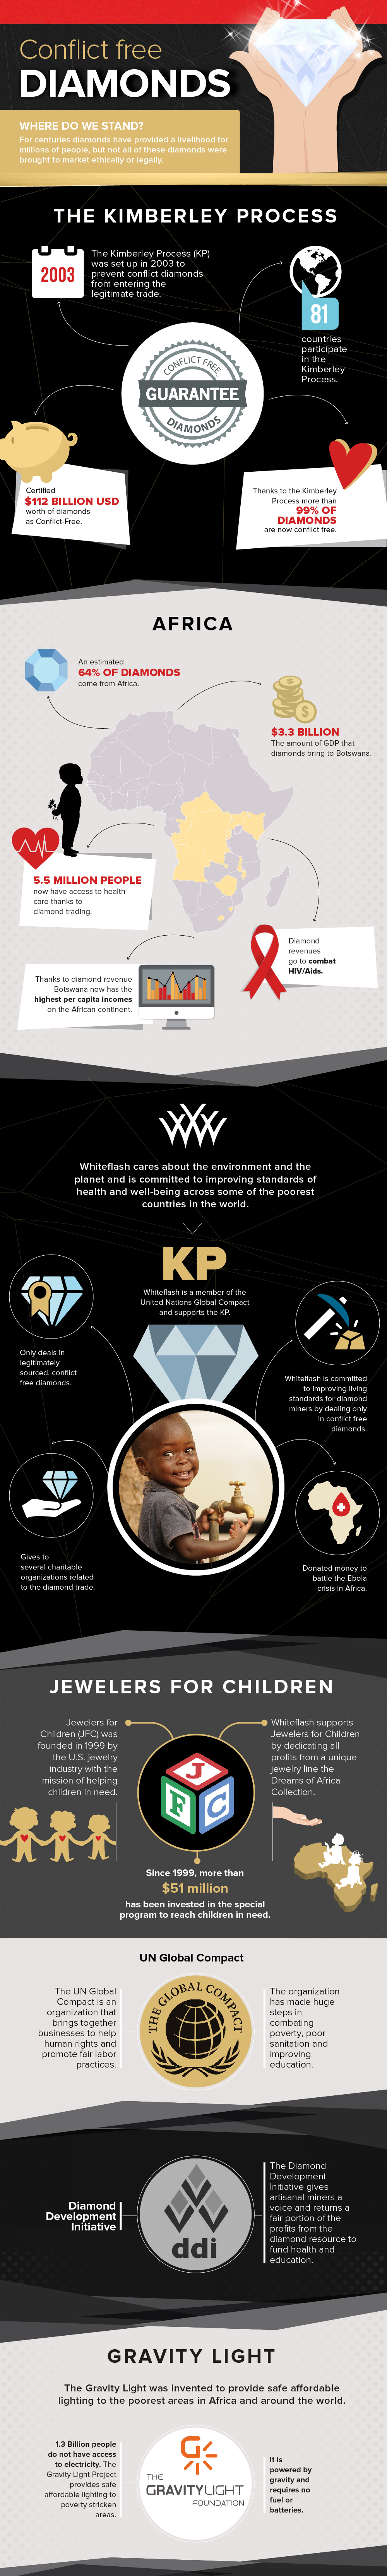 Conflict Free Diamonds Infographic